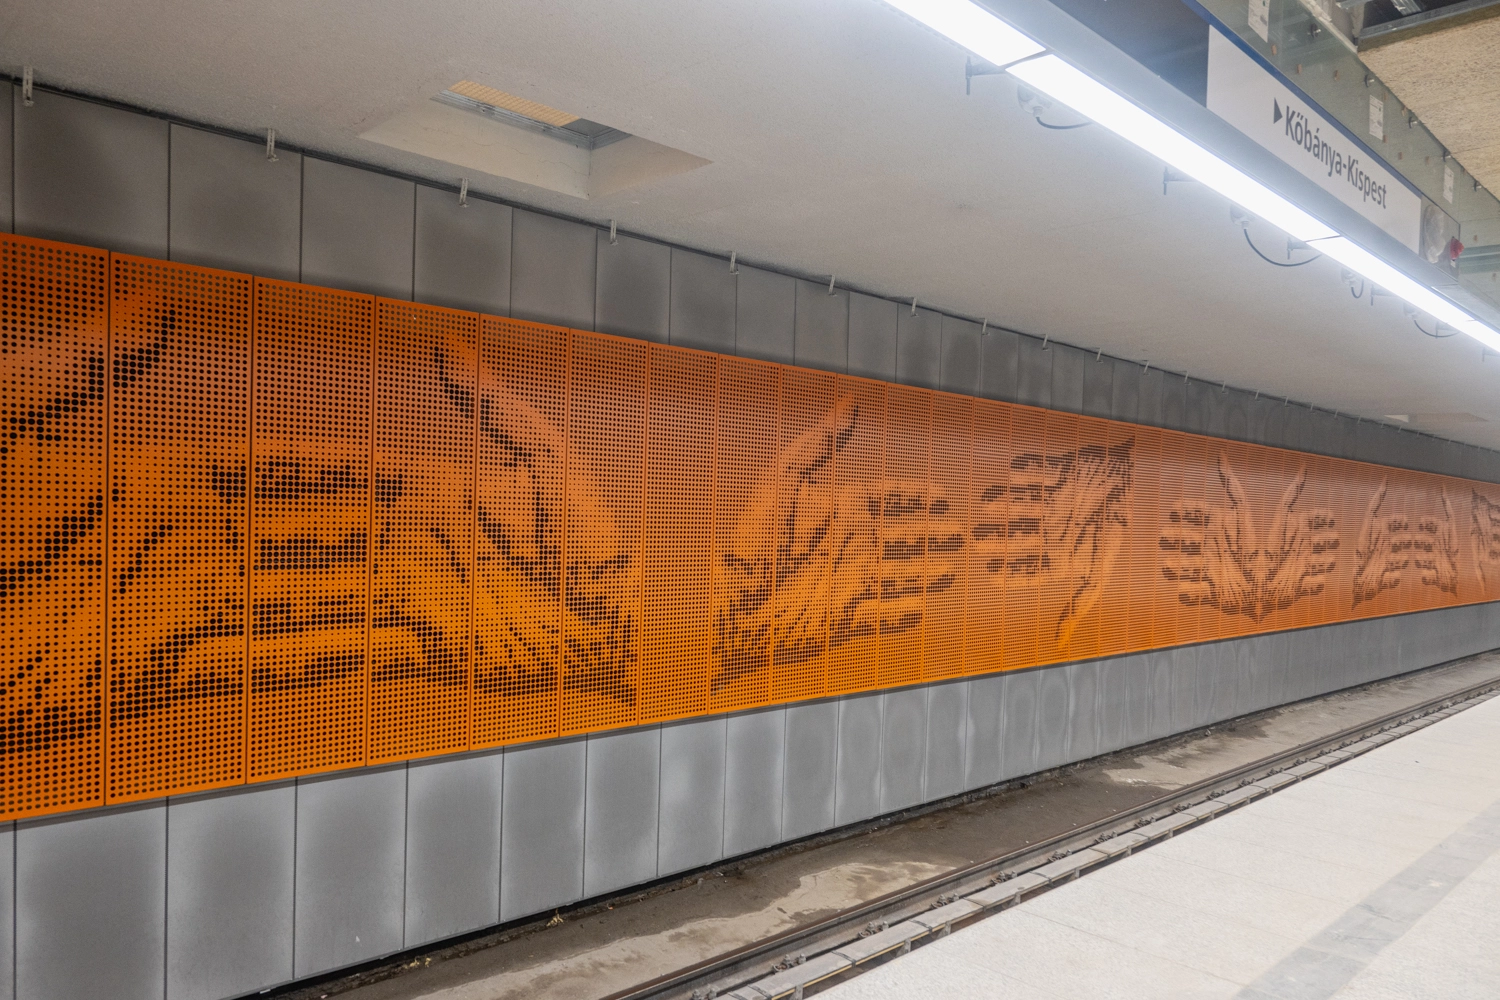 Óriáscsillároktól a felújított szellőzőkig – bejártuk az átadás előtt álló Nagyvárad téri metróállomást